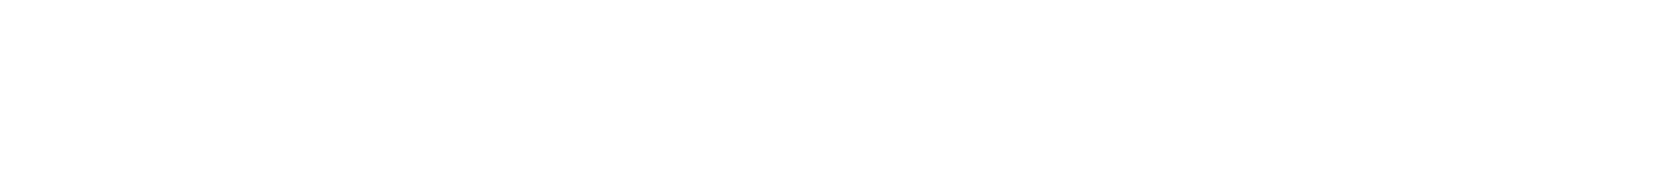 AF-S NIKKOR 58mm f/1.4G